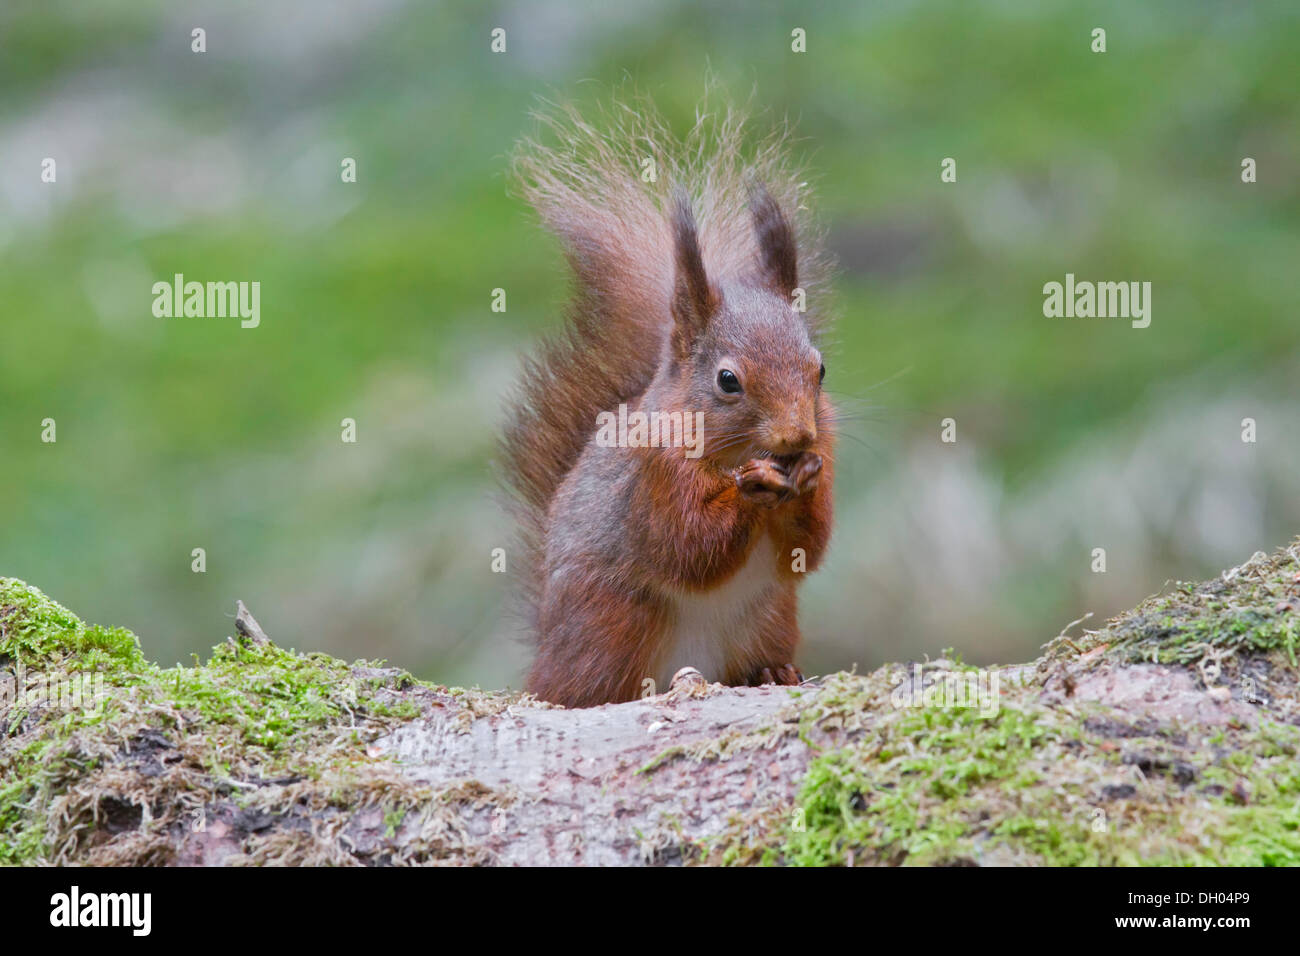 Red squirrel (Sciurus vulgaris), north west England, United Kingdom, Europe Stock Photo